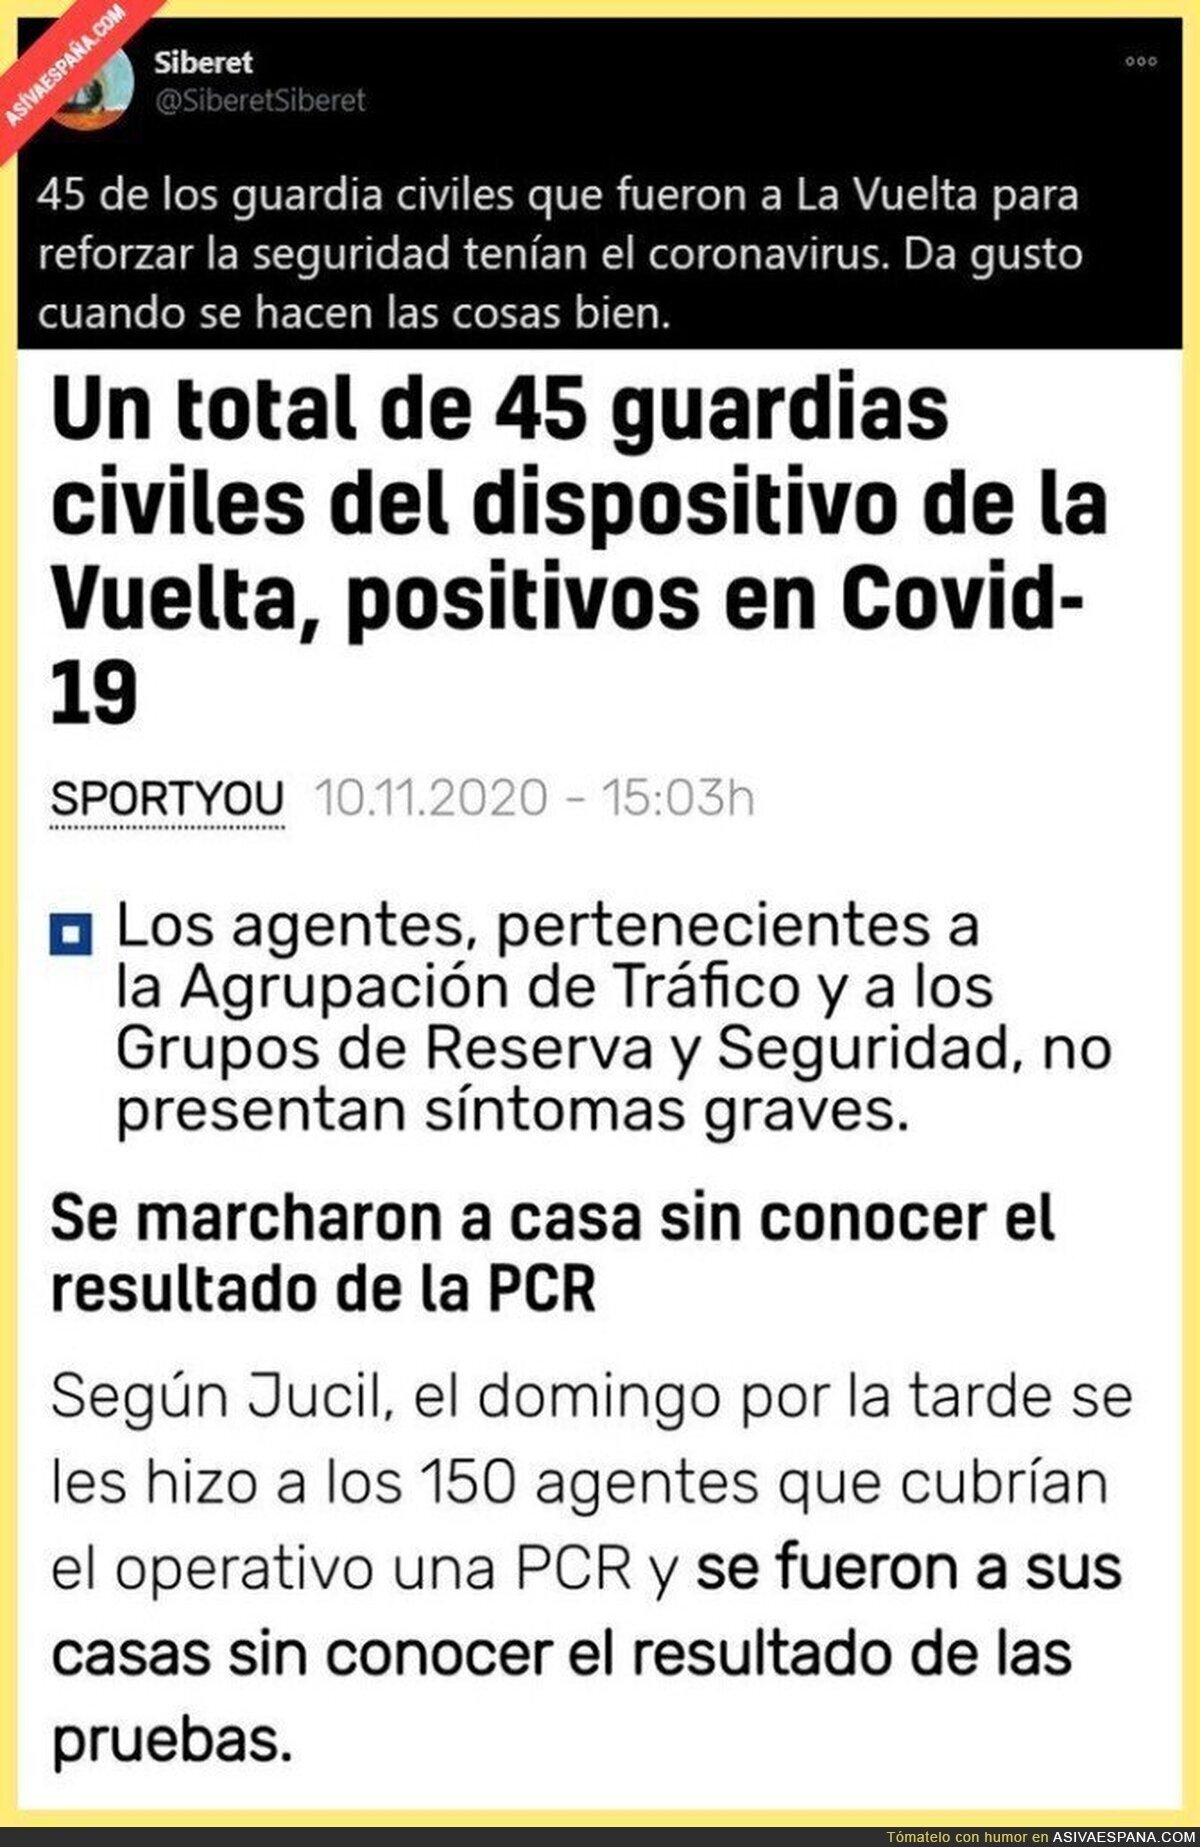 La participación de la Guardia Civil en la Vuelta a España ha sido muy... positiva